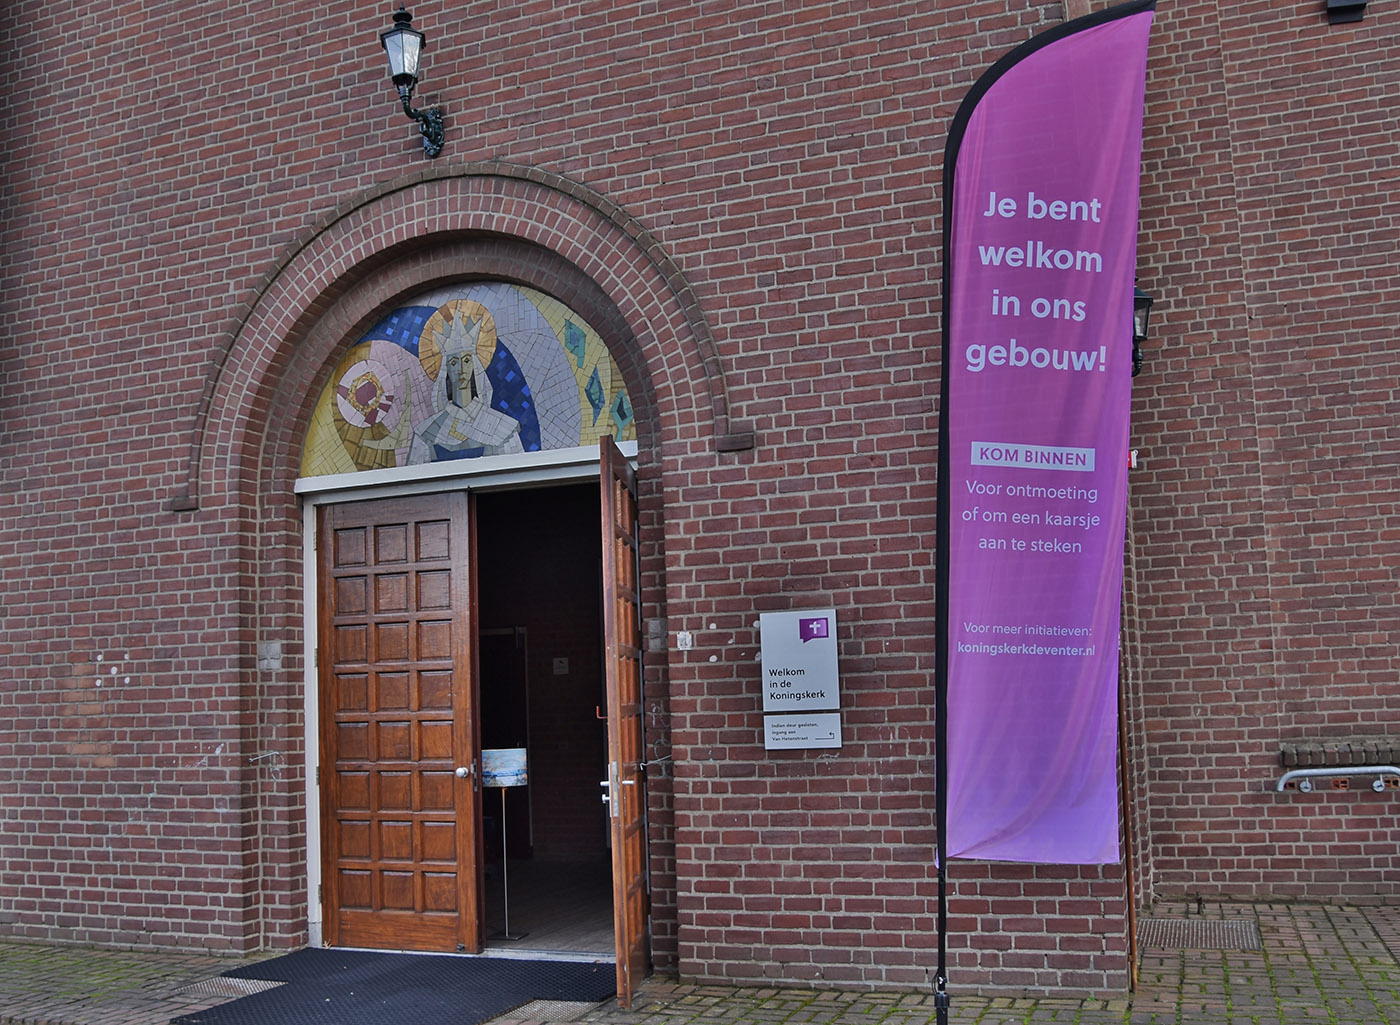 Open kerk Deventer - Je bent welkom in ons kerkgebouw